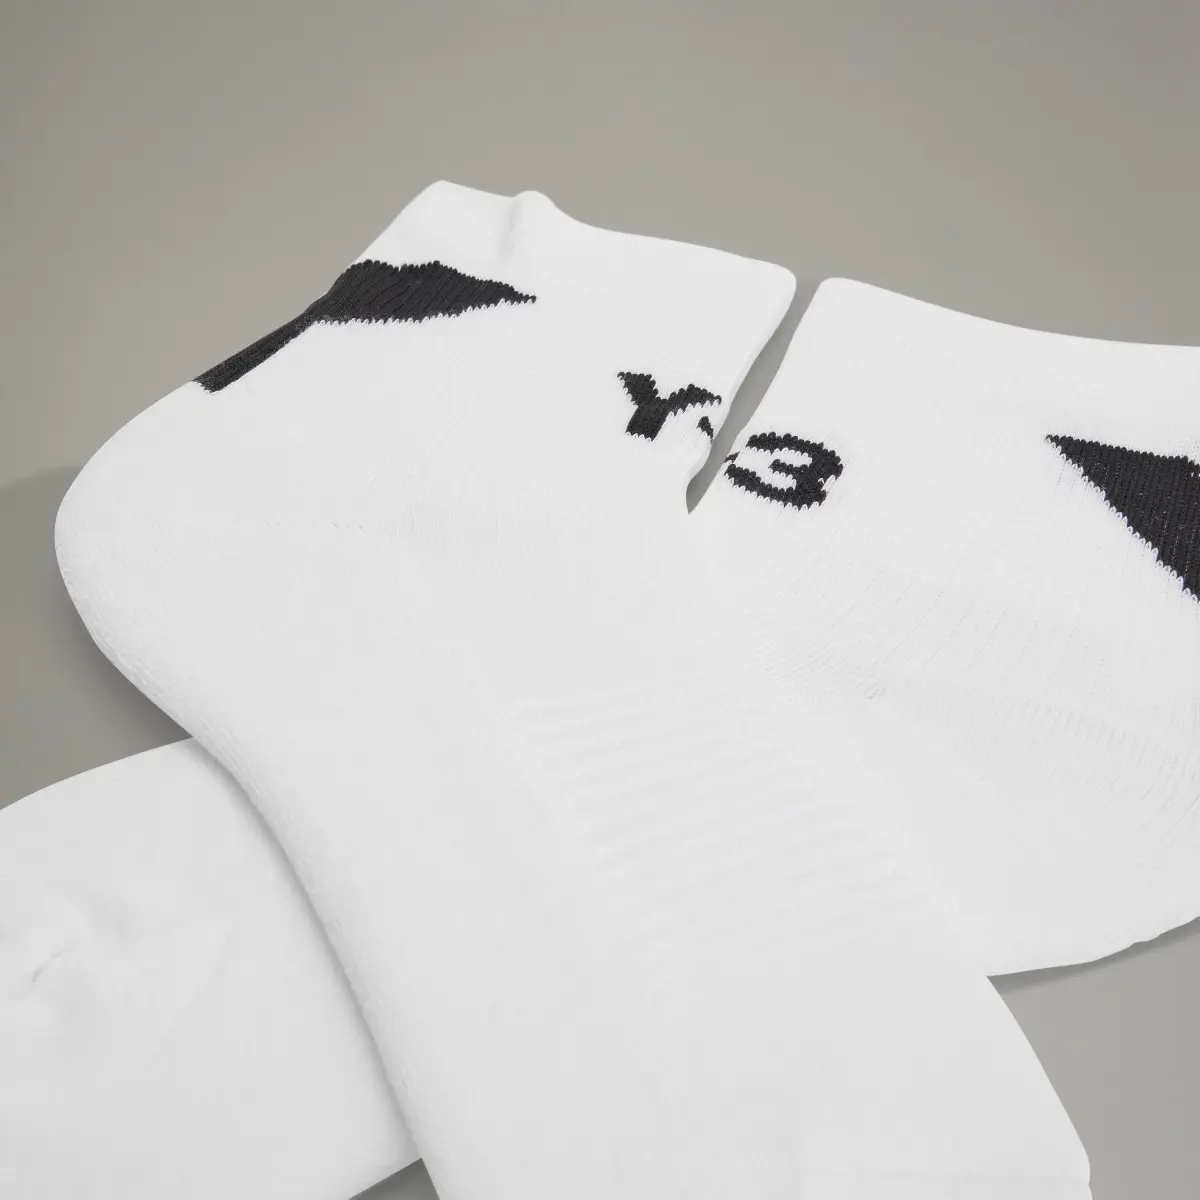 Adidas Y-3 Lo Socks. 3